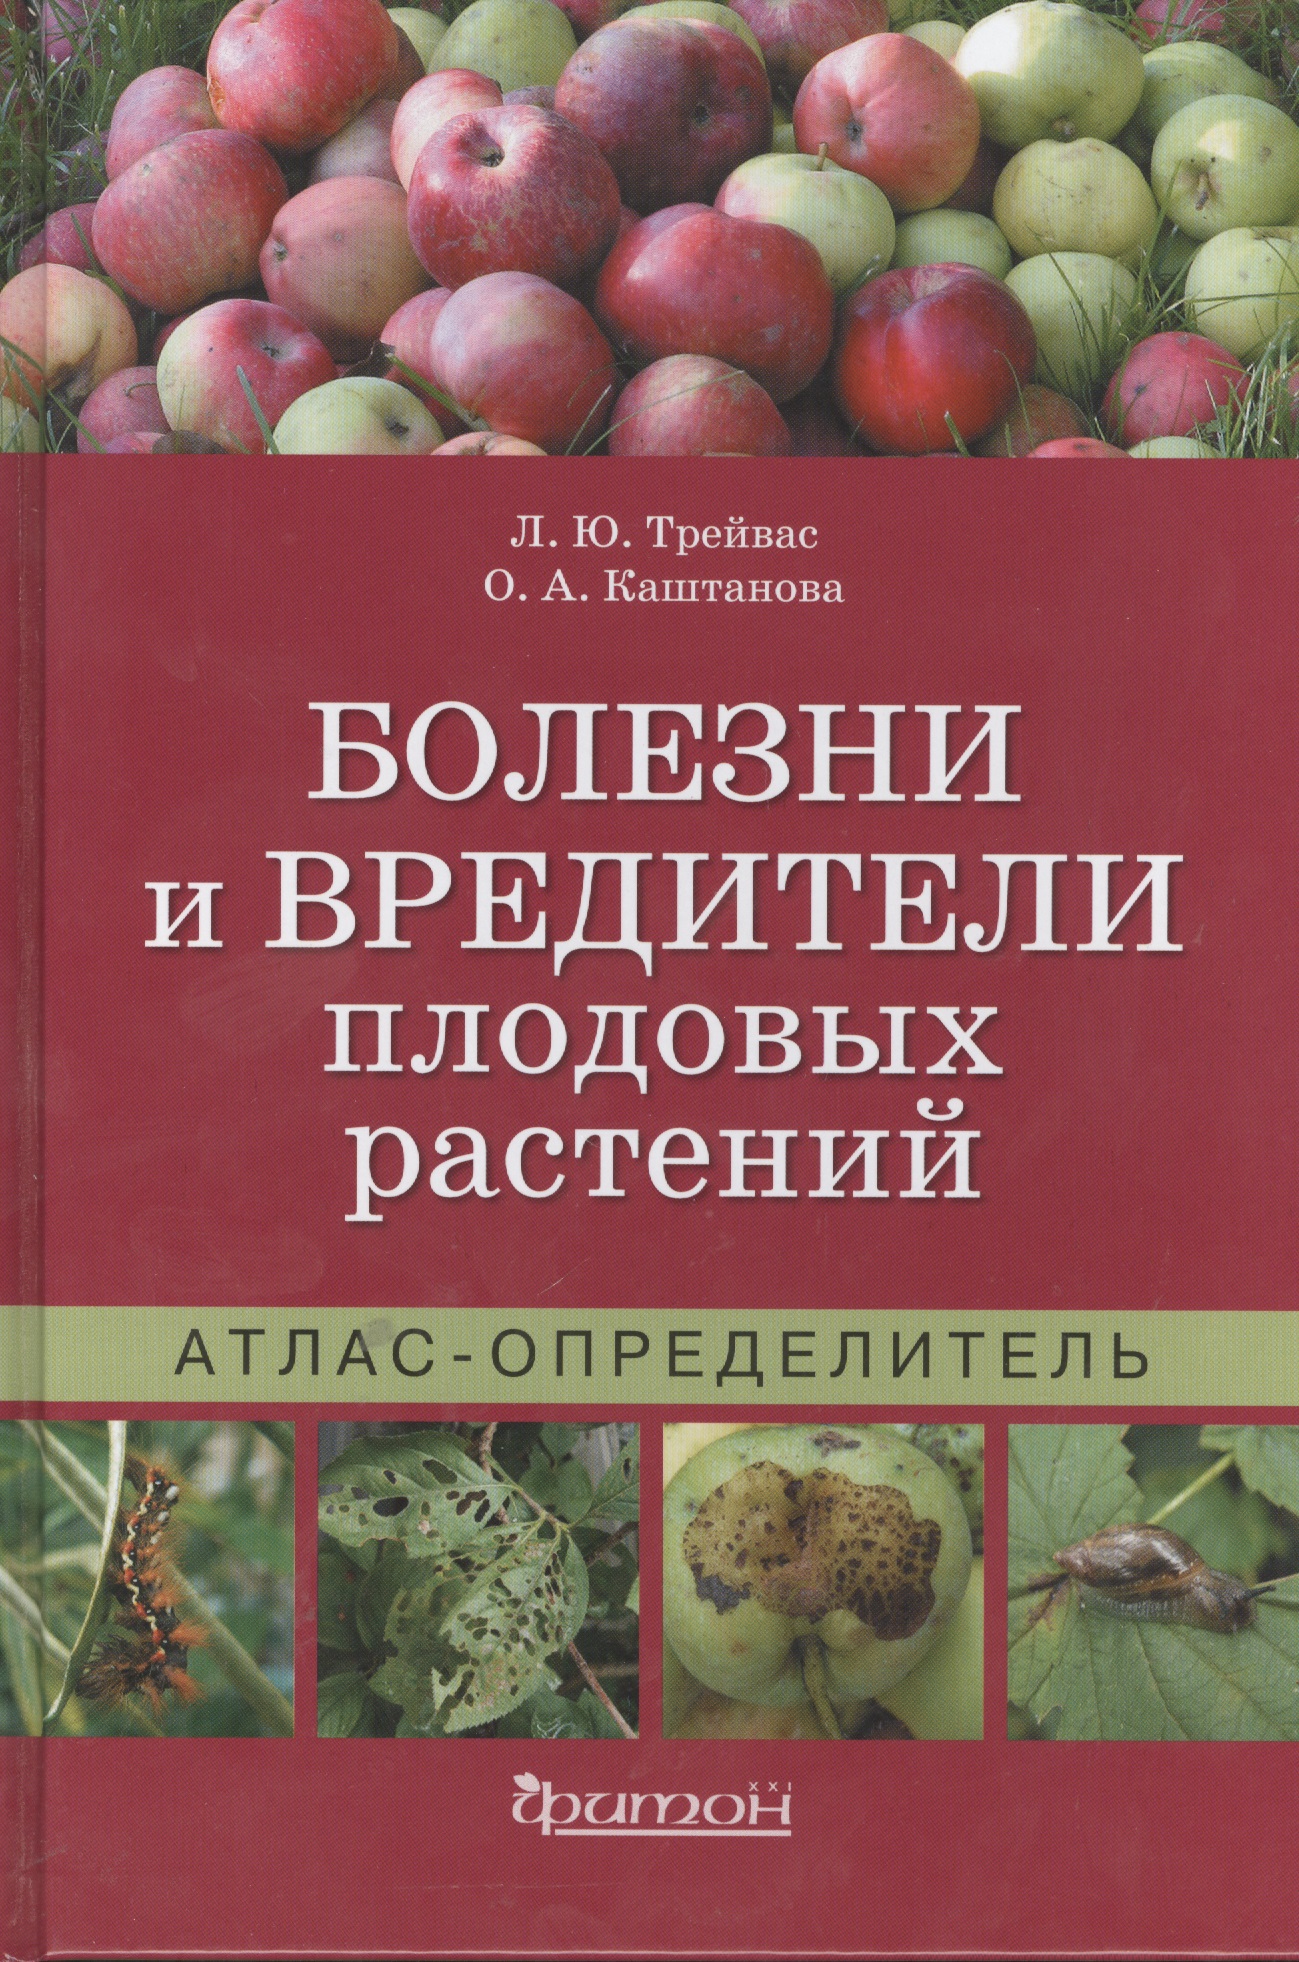 Болезни и вредители плодовых растений: Атлас-определитель / 2-е изд., испр.